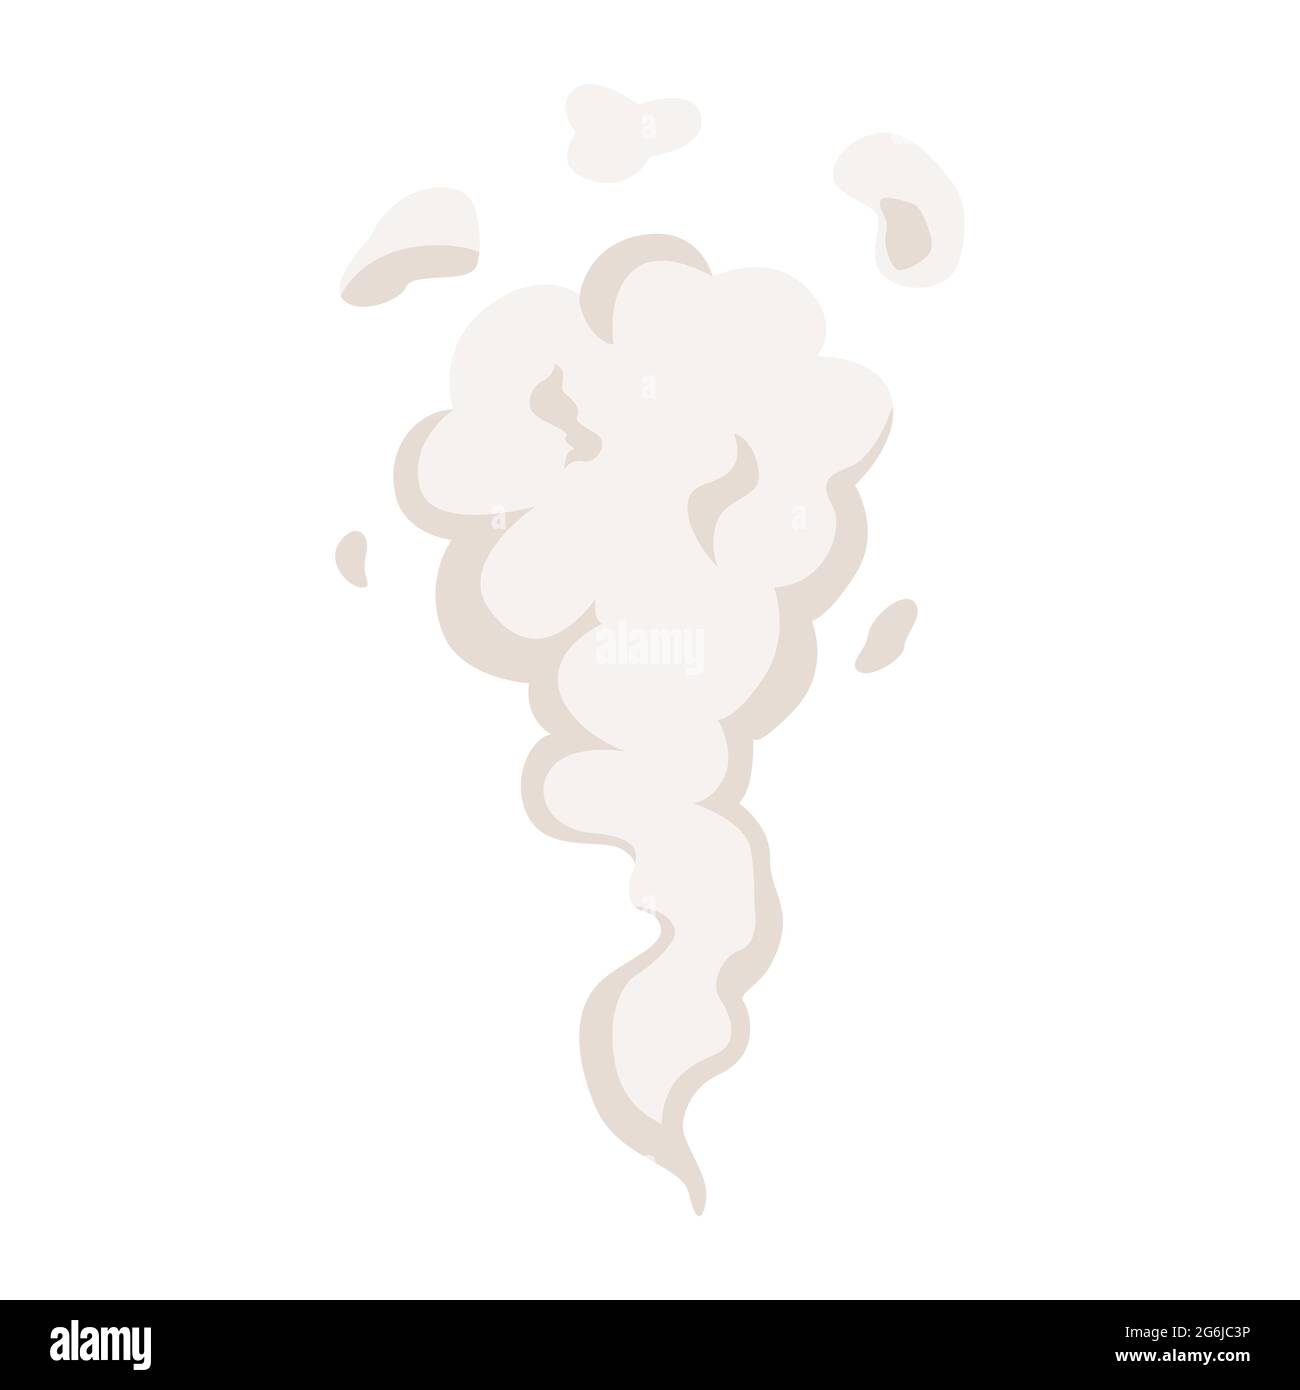 Cartoon Explosion, Dampfwolken, Puff, Nebel, Nebel, Wässriger Dampf. Spezialeffekt. Stock Vektor